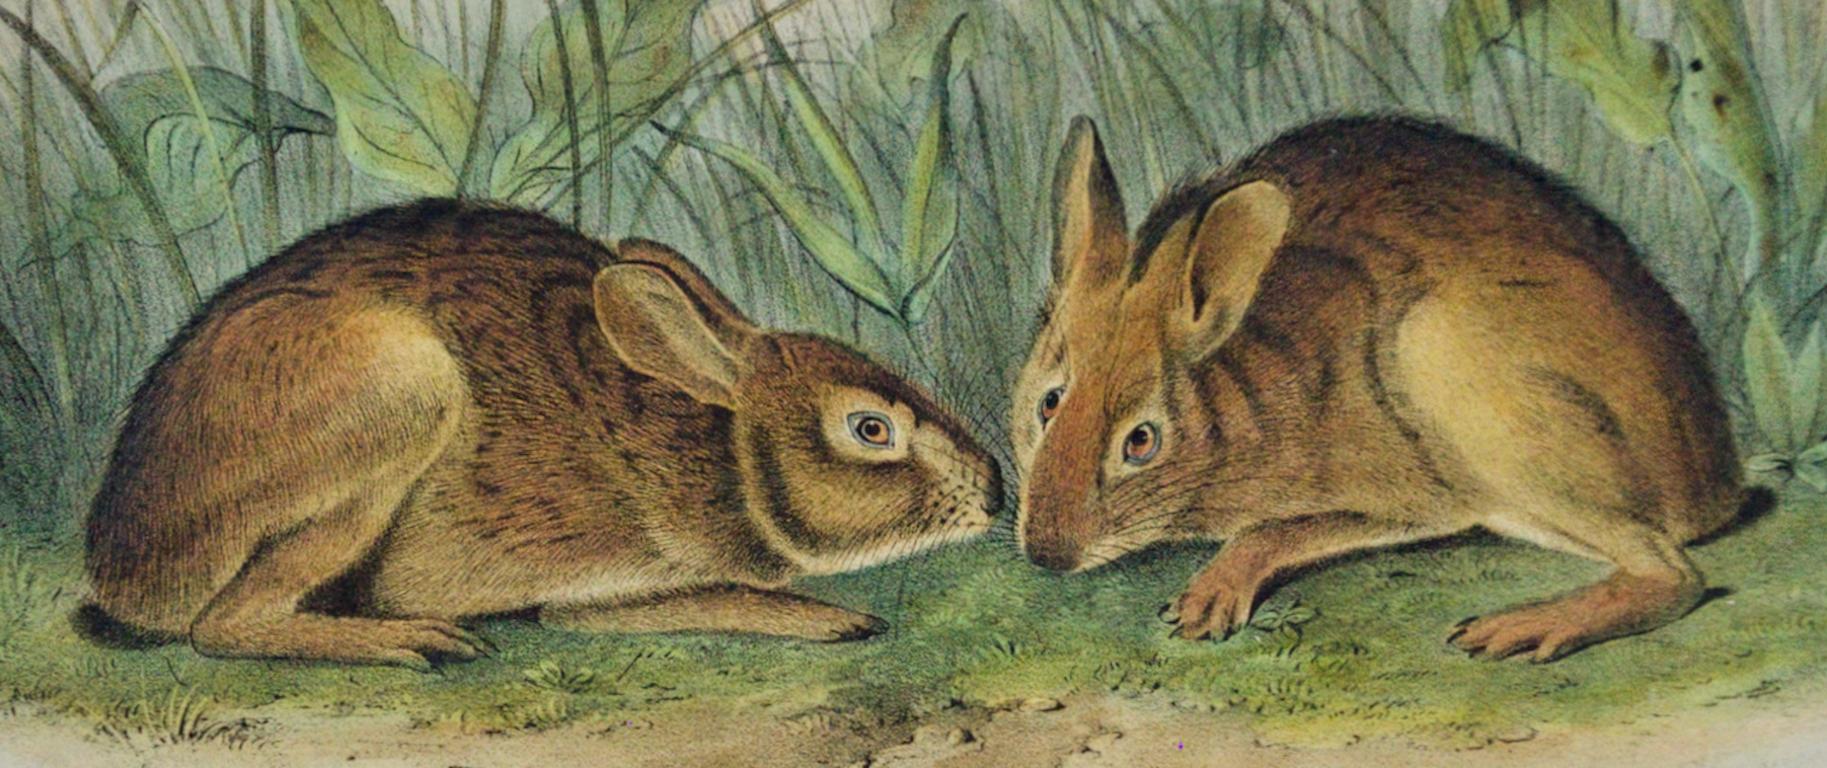 Marsh Hare : Original 19th Century 1st Octavo Ed. Lithographie colorée à la main d'Audubon - Naturalisme Print par John James Audubon